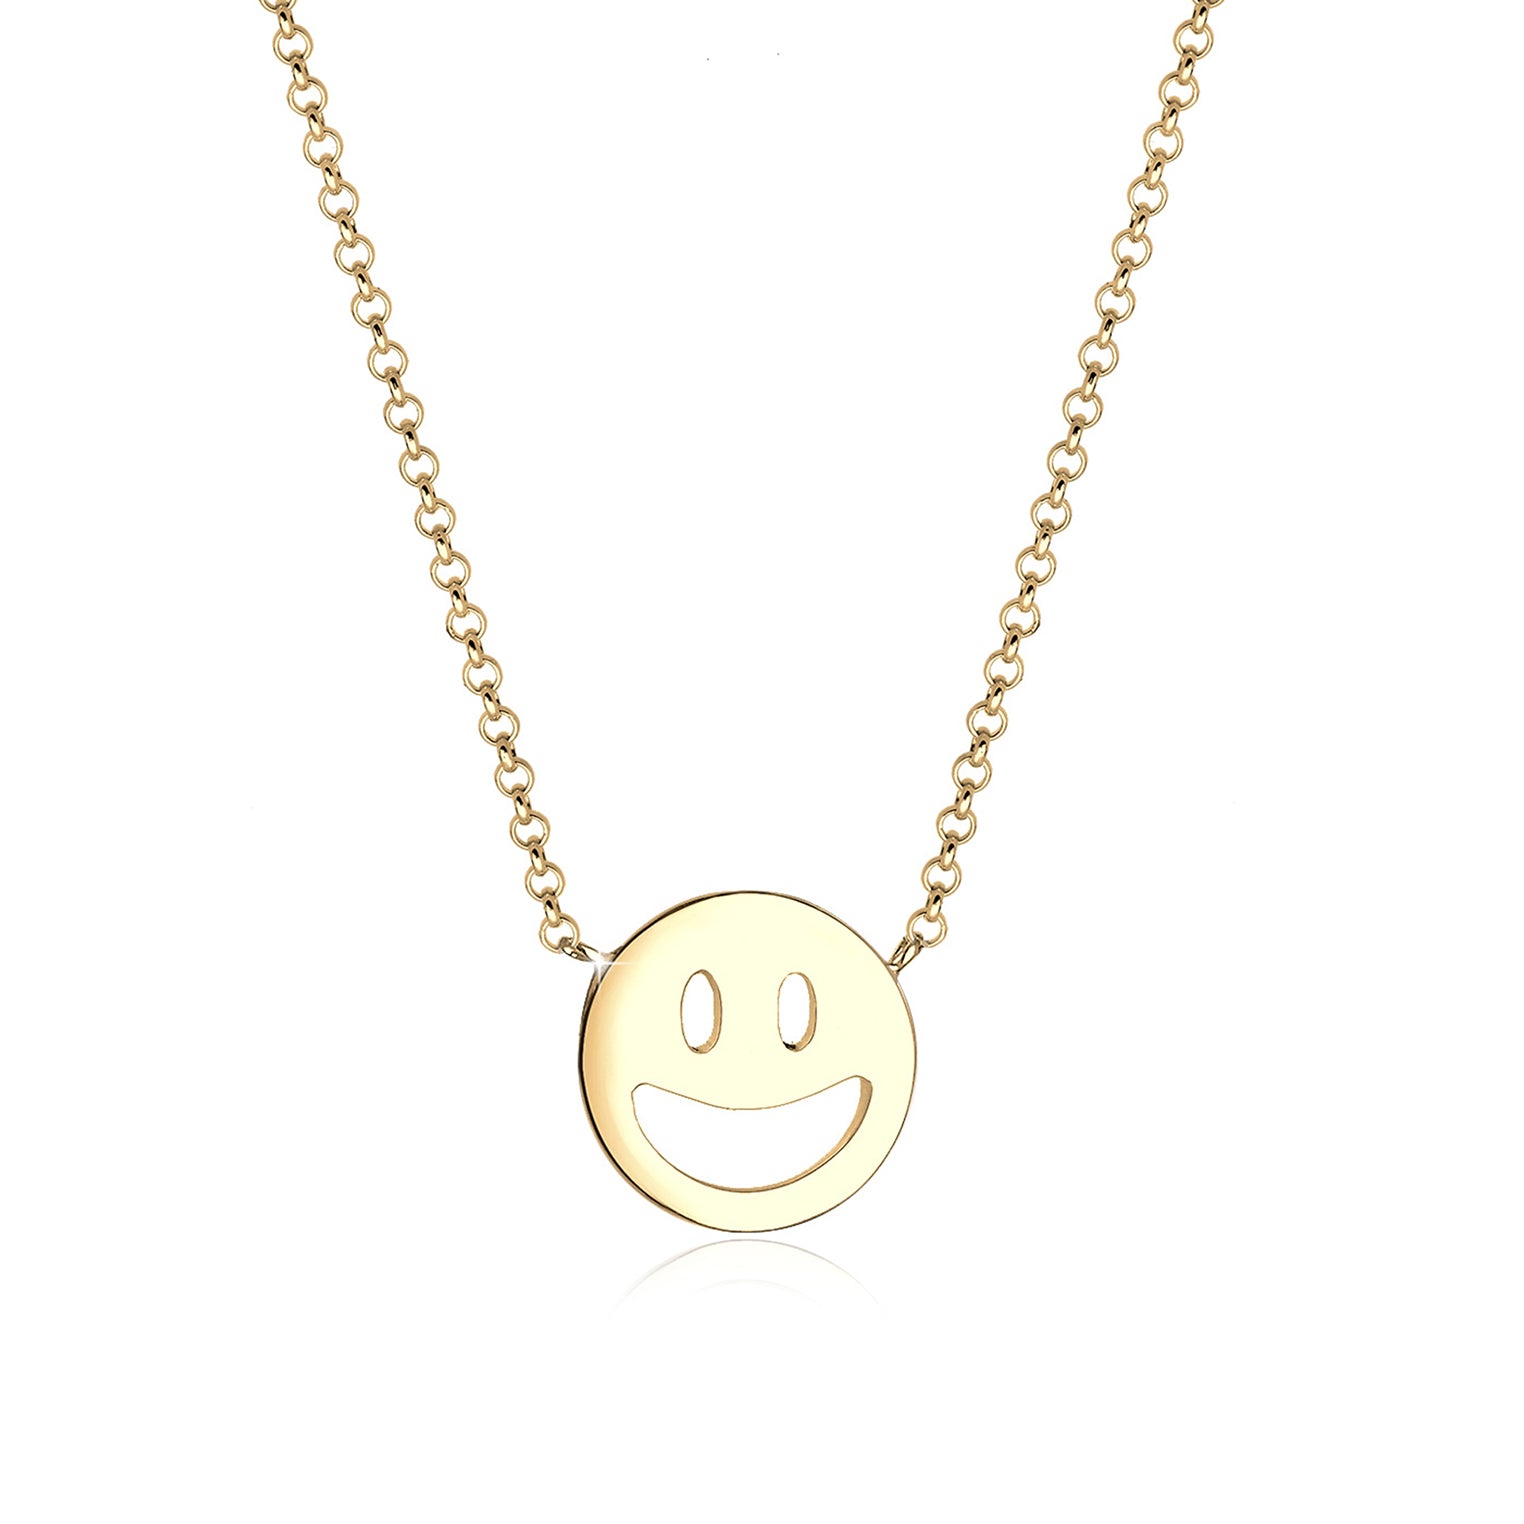 Gold - Elli | Halskette mit Smiling Face | 925 Sterling Silber vergoldet